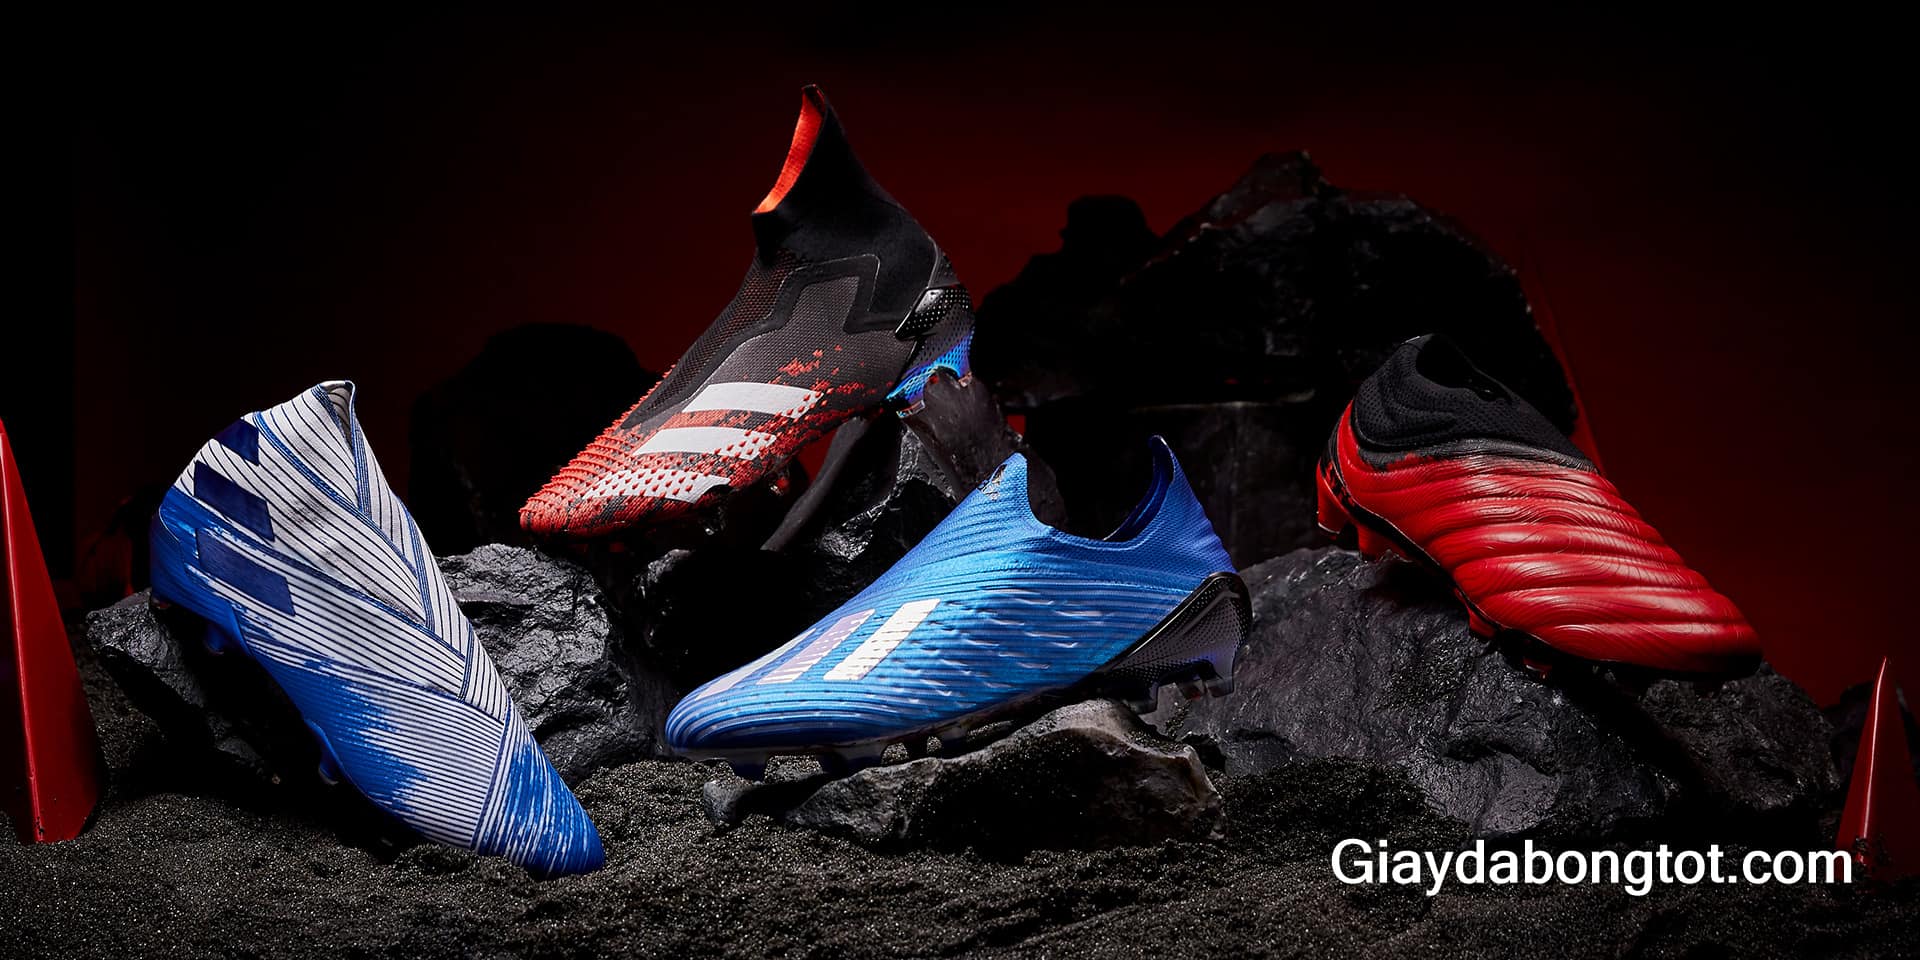 Bộ sưu tập giày đá bóng Adidas Mutator mới nhất 2020 vừa được ra mắt